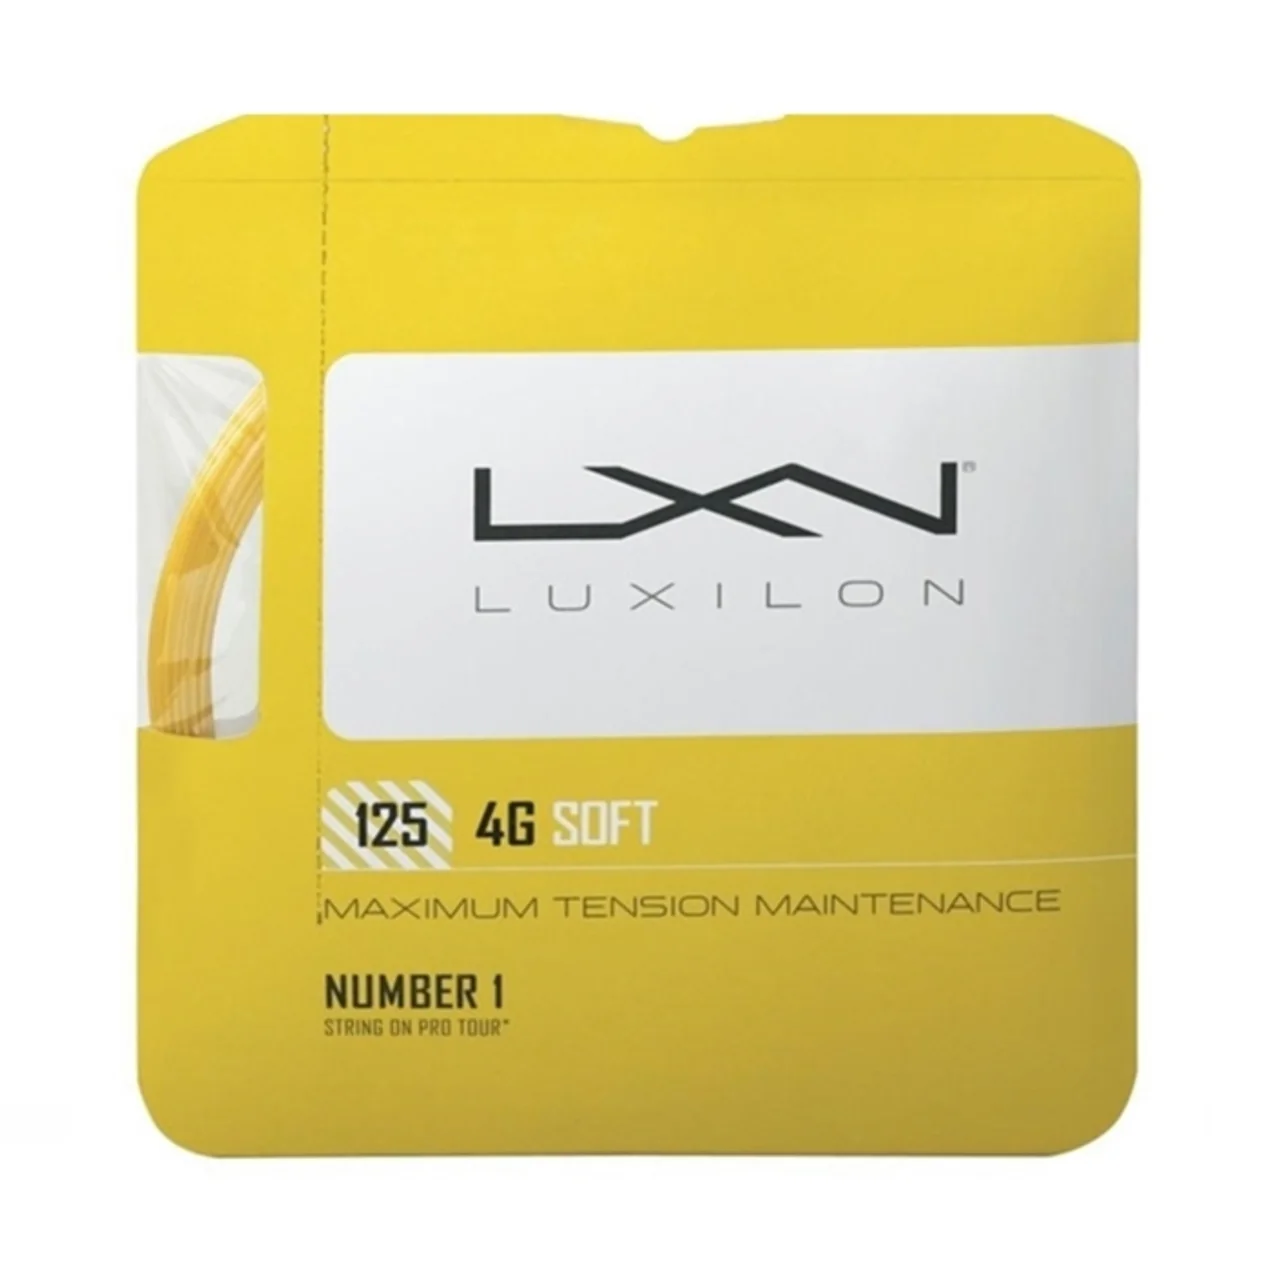 Luxilon 4G Soft Set